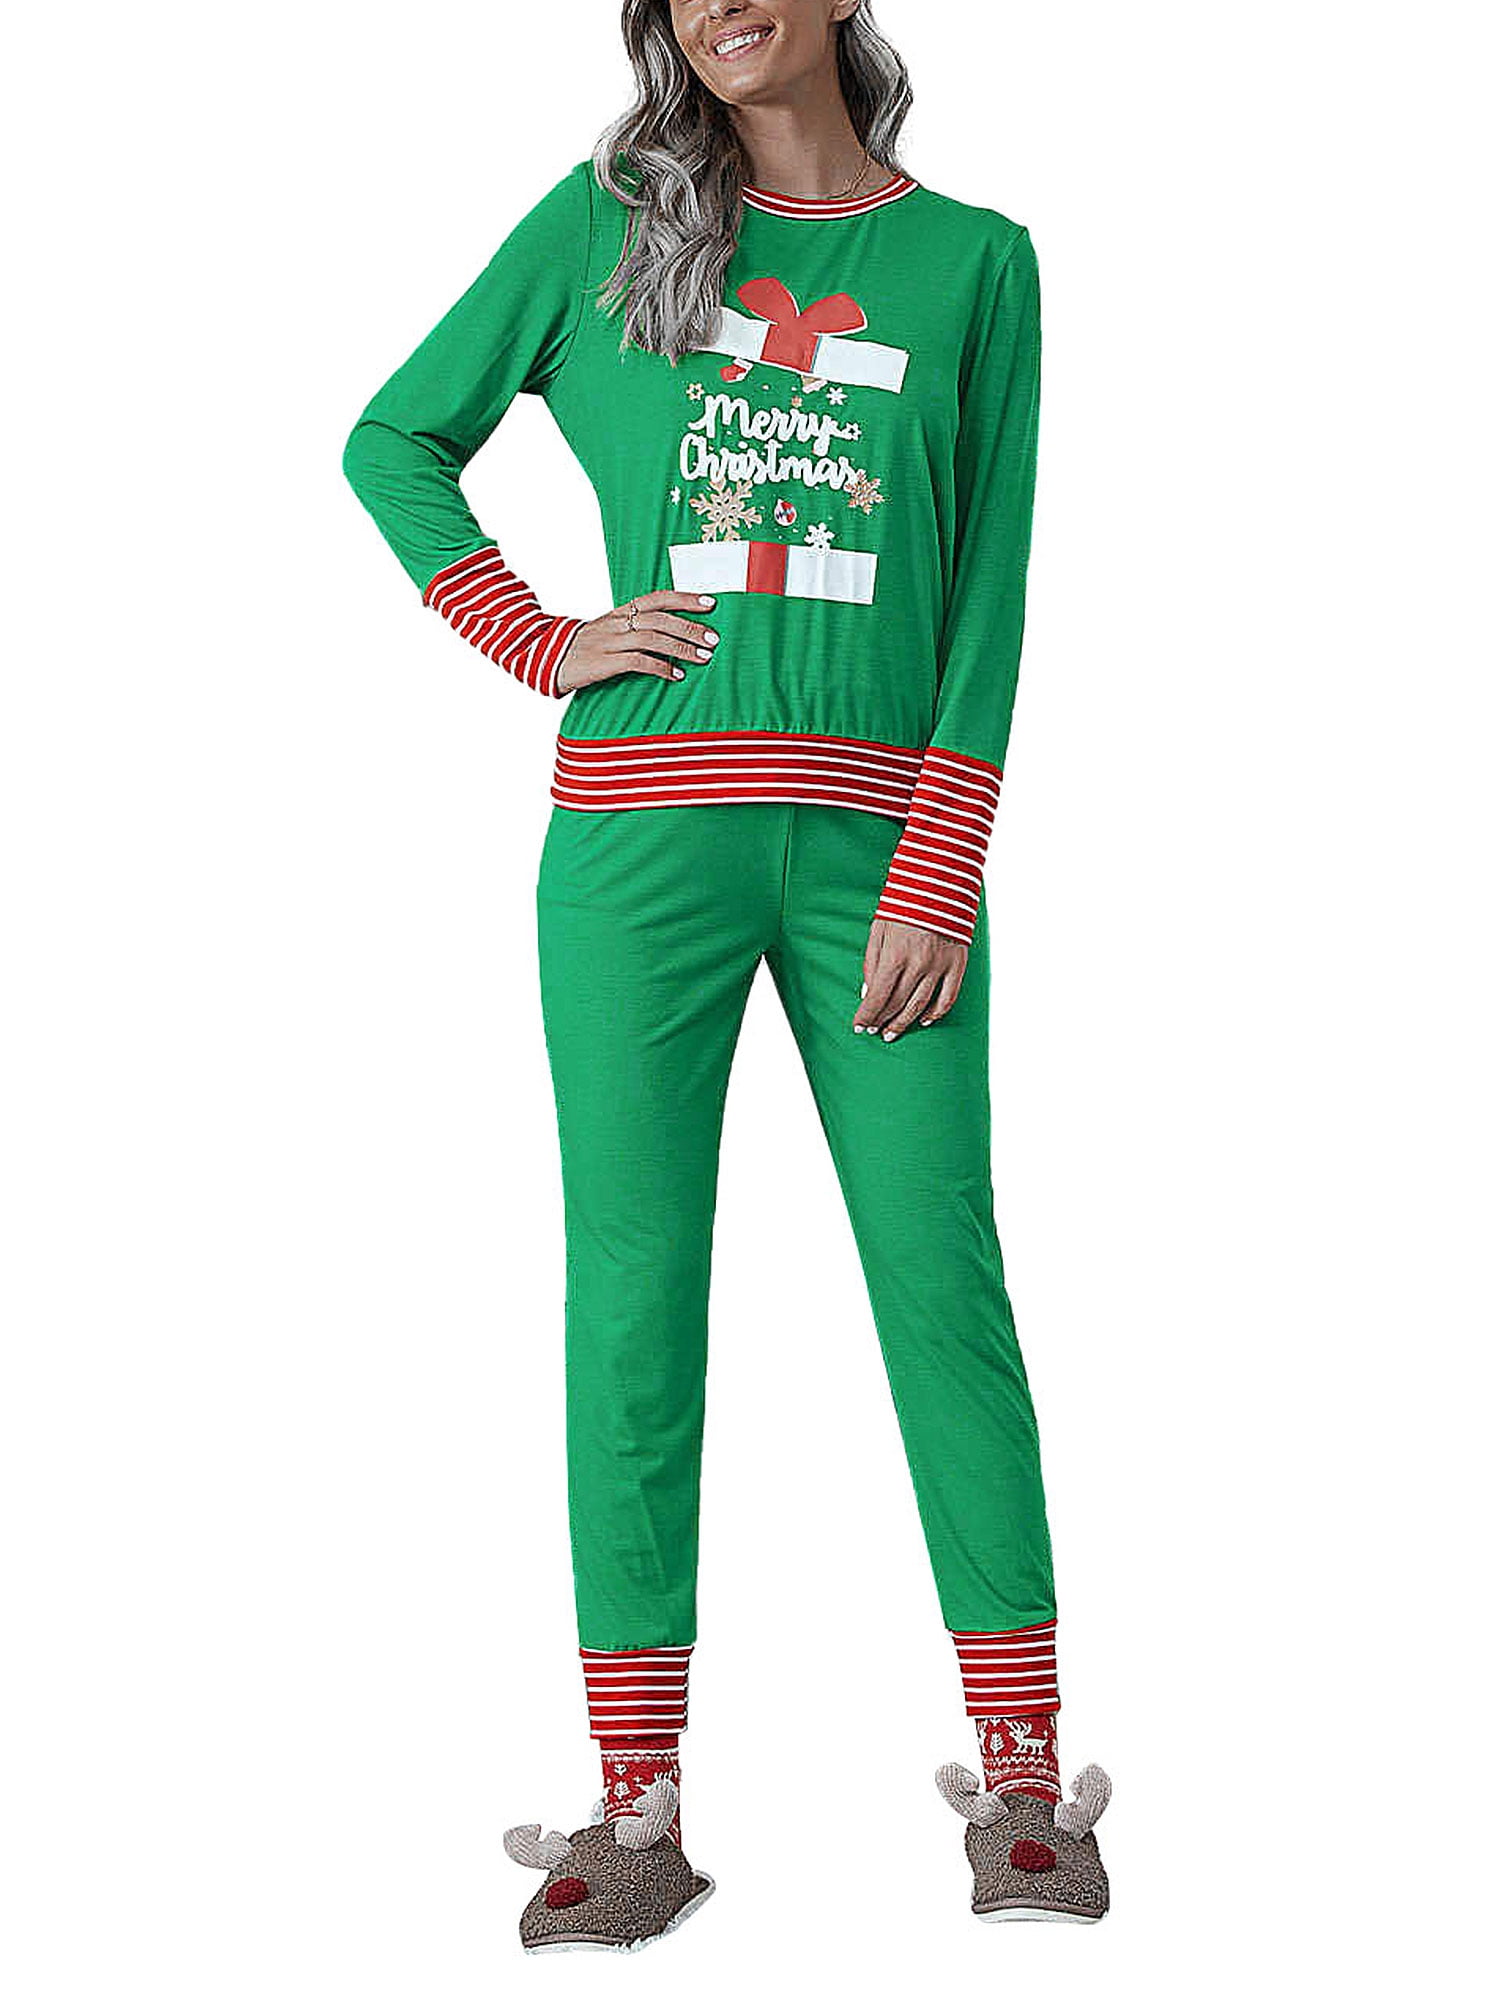 Avamo Plus Size Christmas Pajamas Set Womens Long Sleeve Printed ...